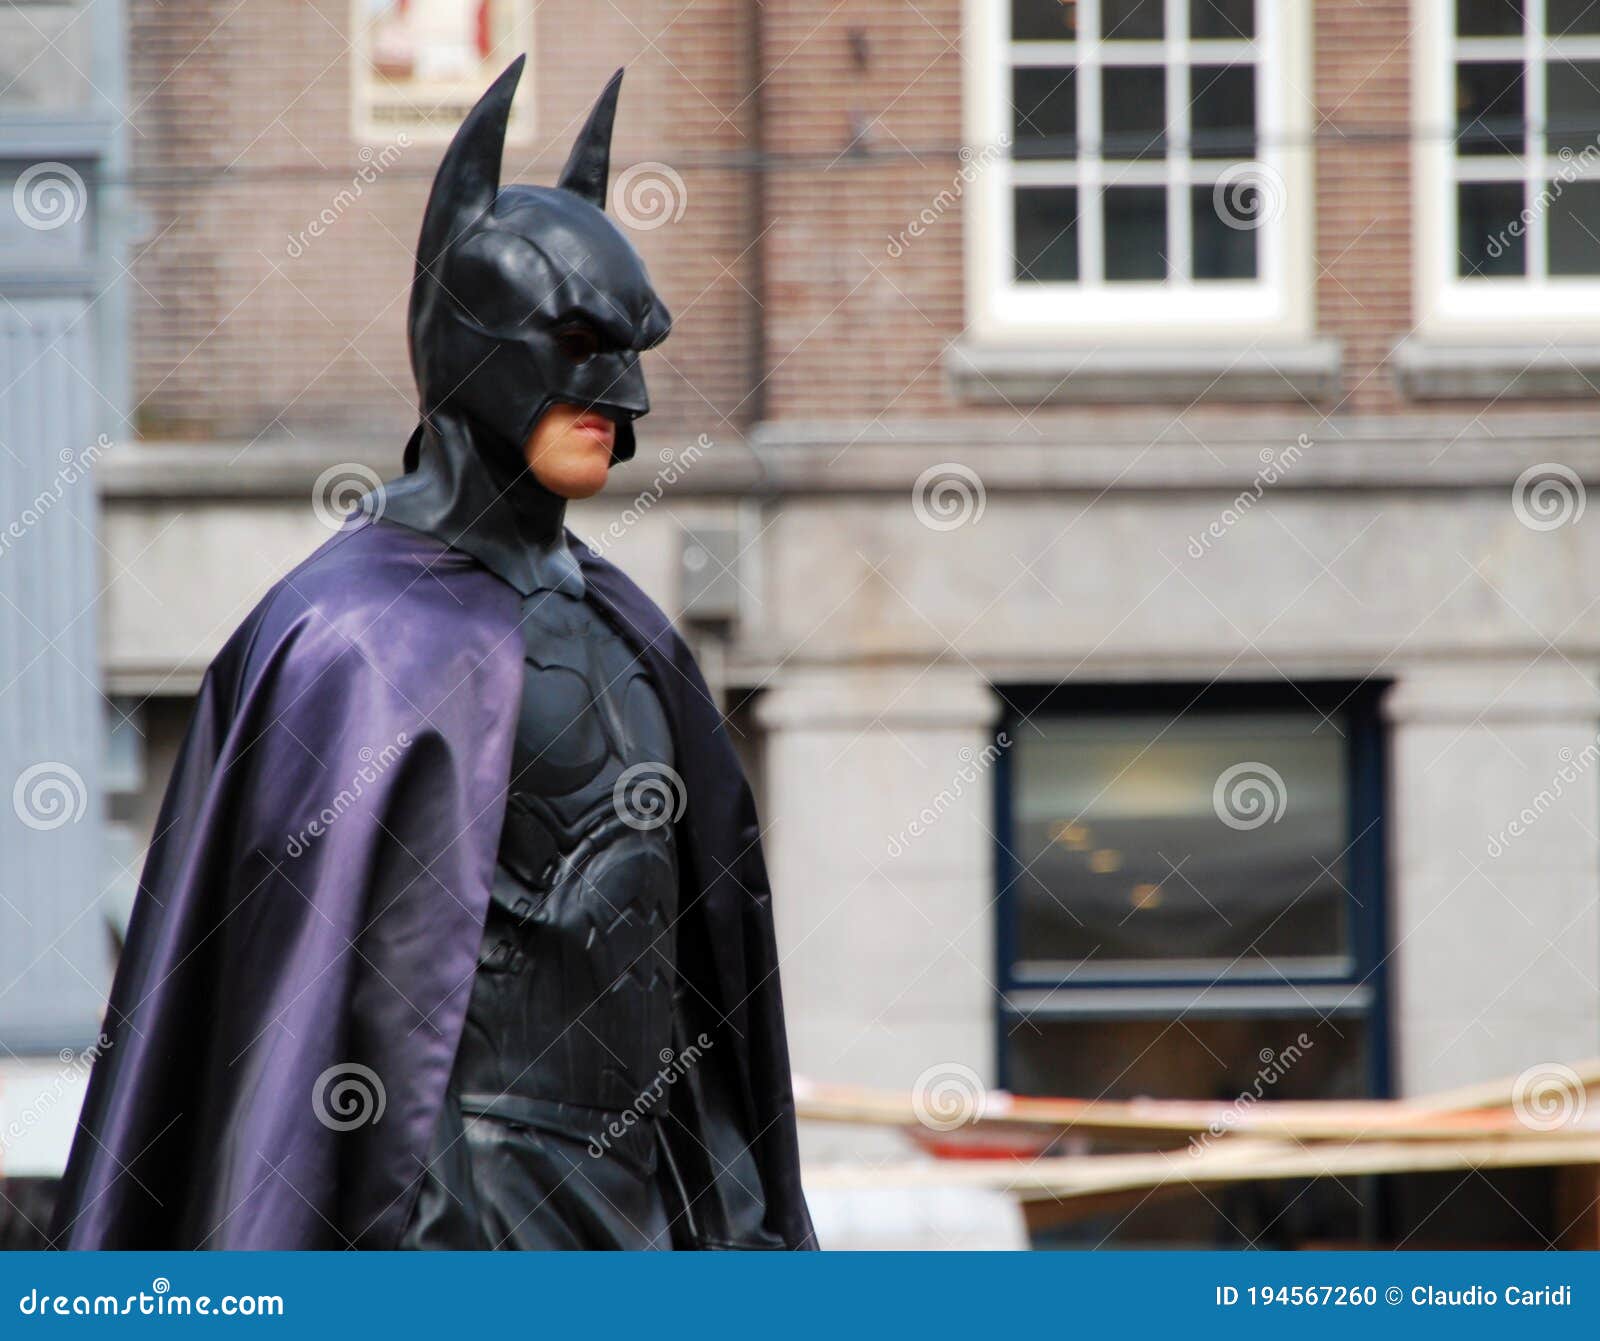 Actor Disfrazado De Batman En La Plaza Central De La Presa De Amsterdam.  Imagen editorial - Imagen de gotham, acontecimiento: 194567260